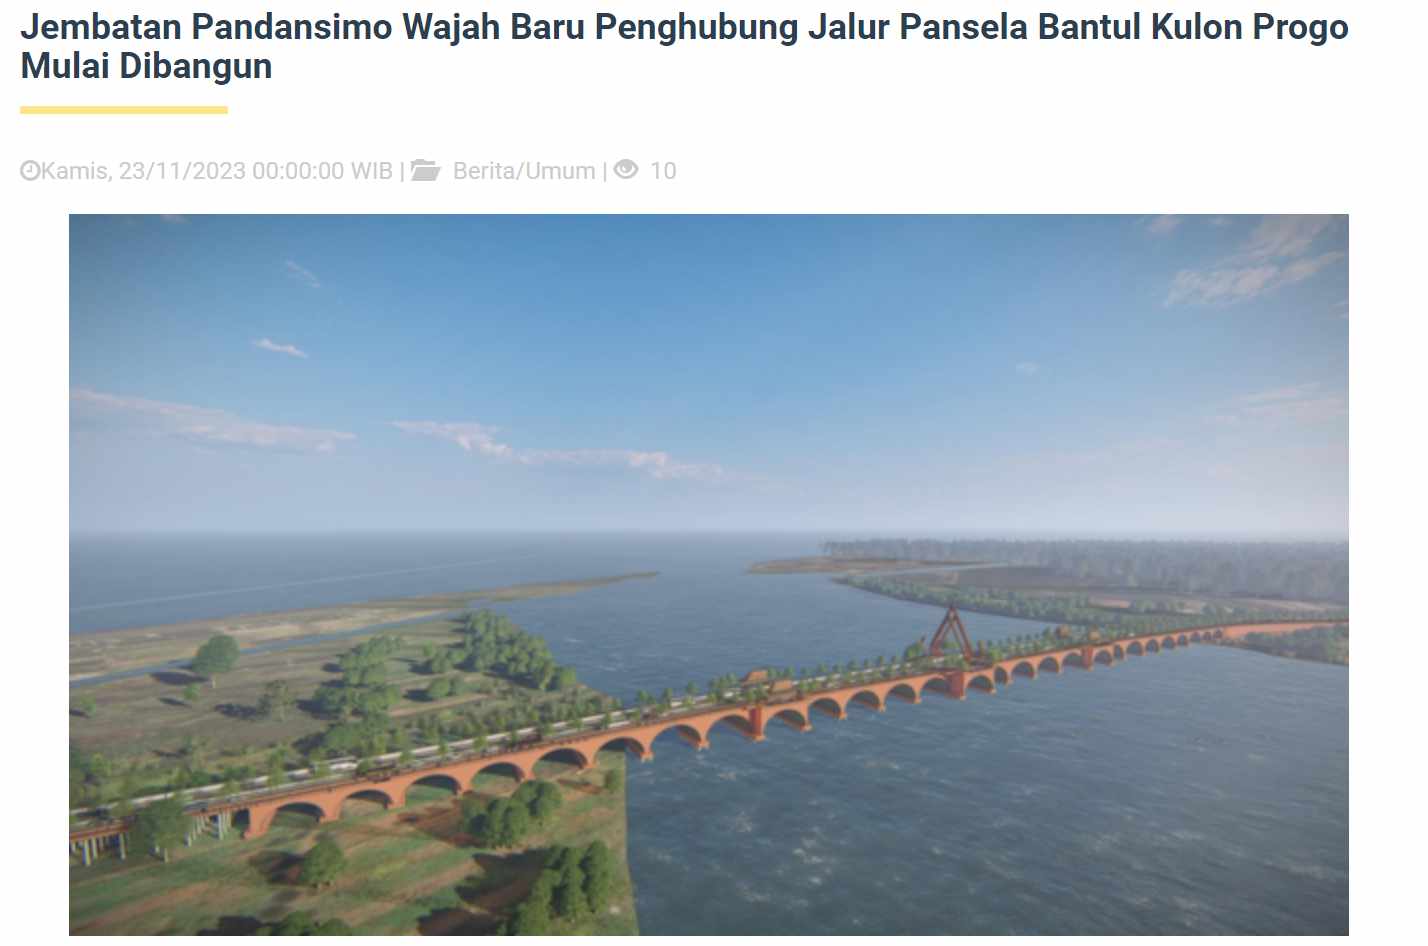 PT Adhi Karya Memenangkan Kontrak Proyek Jembatan Pandansimo dengan Nilai Rp814,83 Miliar